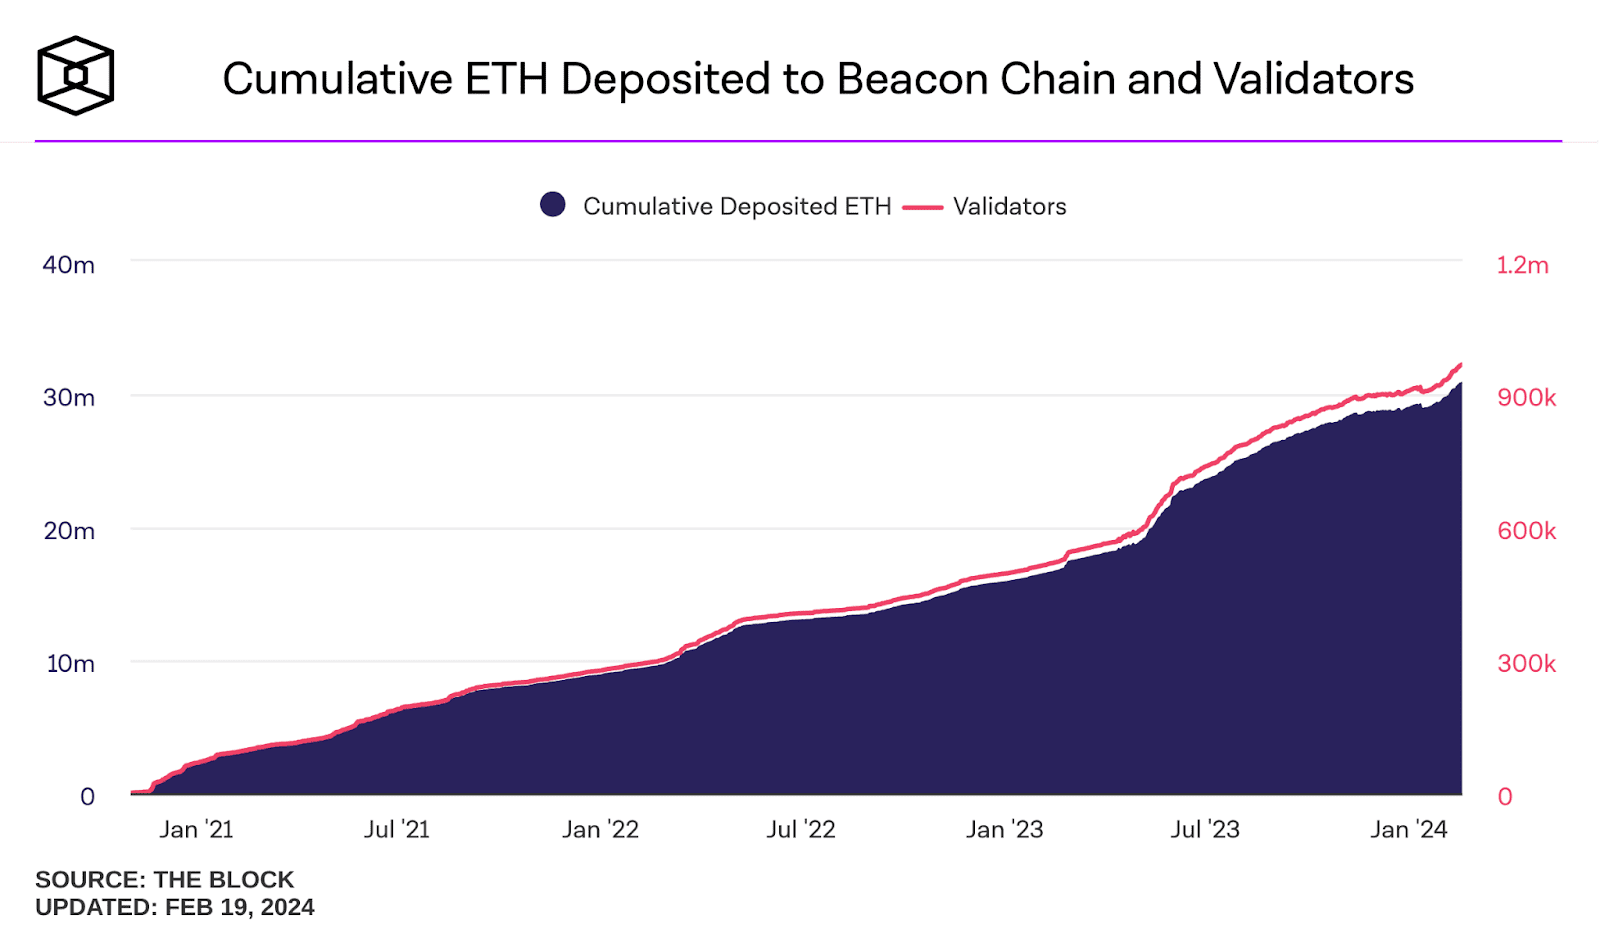 El número de ETH depositados en Beacon Chain y el aumento de nuevos validadores respaldan la robustez de la red.